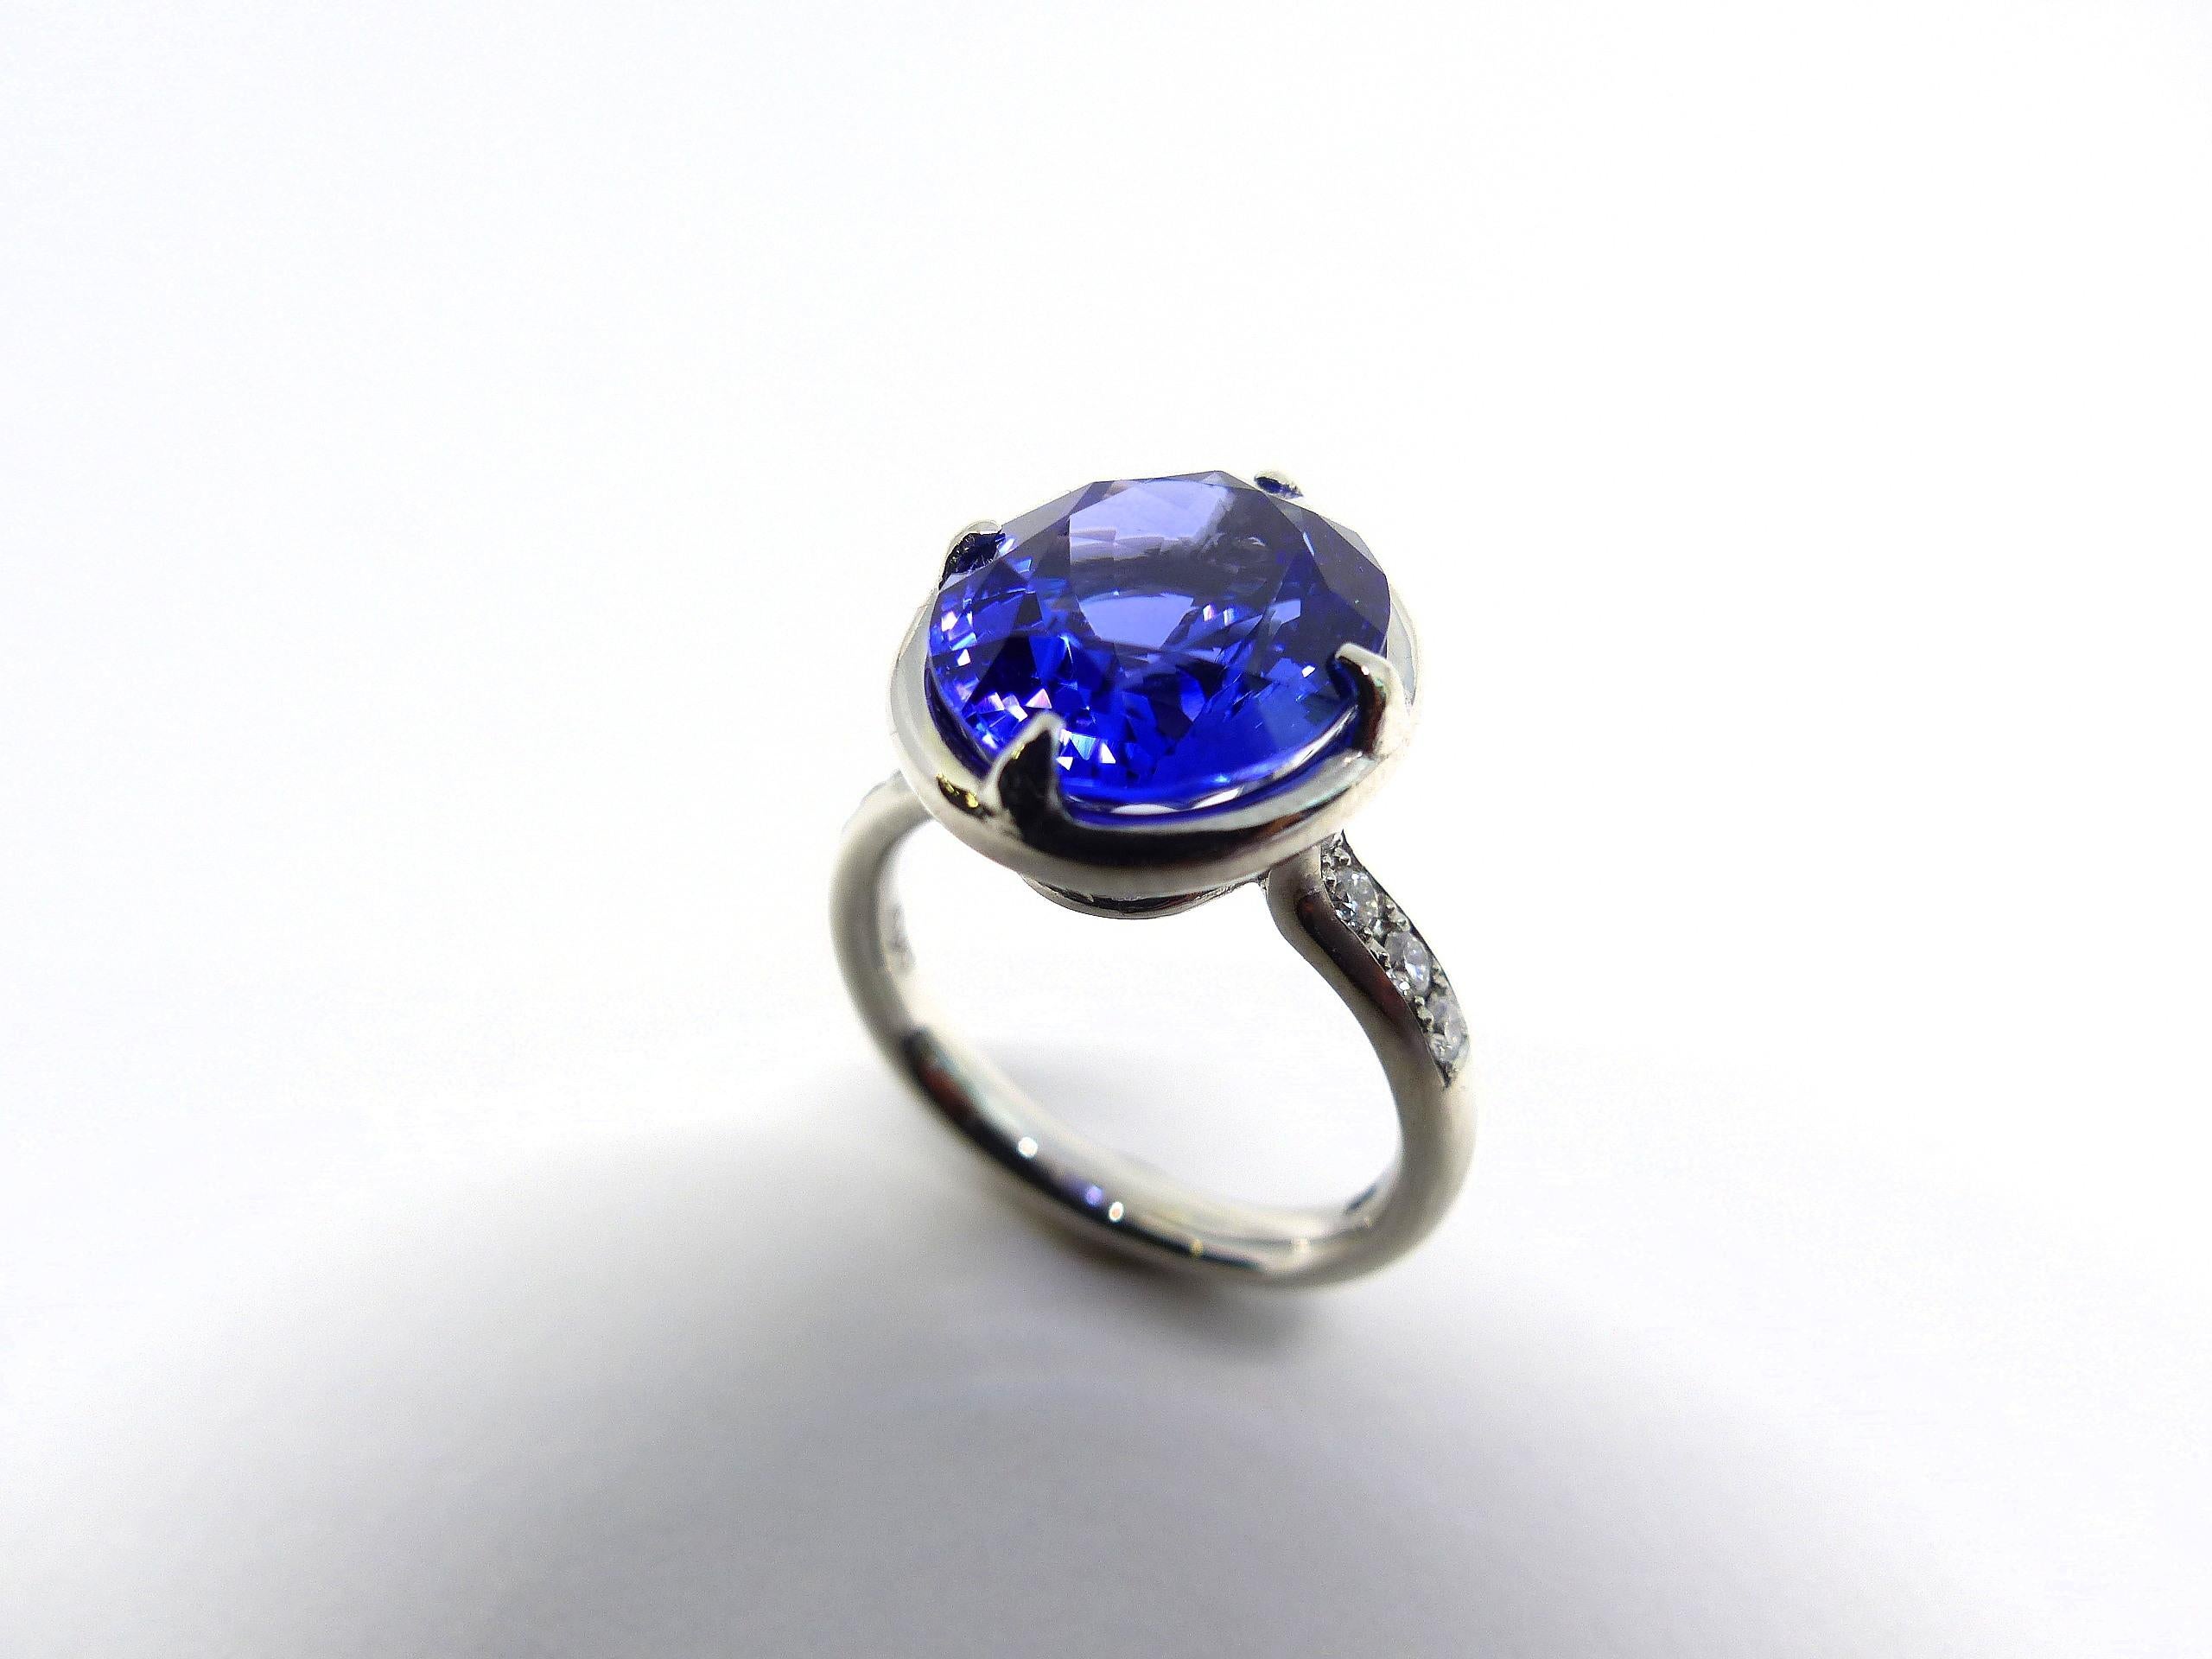 Thomas Leyser est réputé pour ses créations de bijoux contemporains utilisant des pierres précieuses fines.

Cette bague en platine 950k (11,85 g)  est serti de 1x Tansanite de couleur magnifique en bleu intense (ovale, 13x11mm, 7.50ct) + 10x